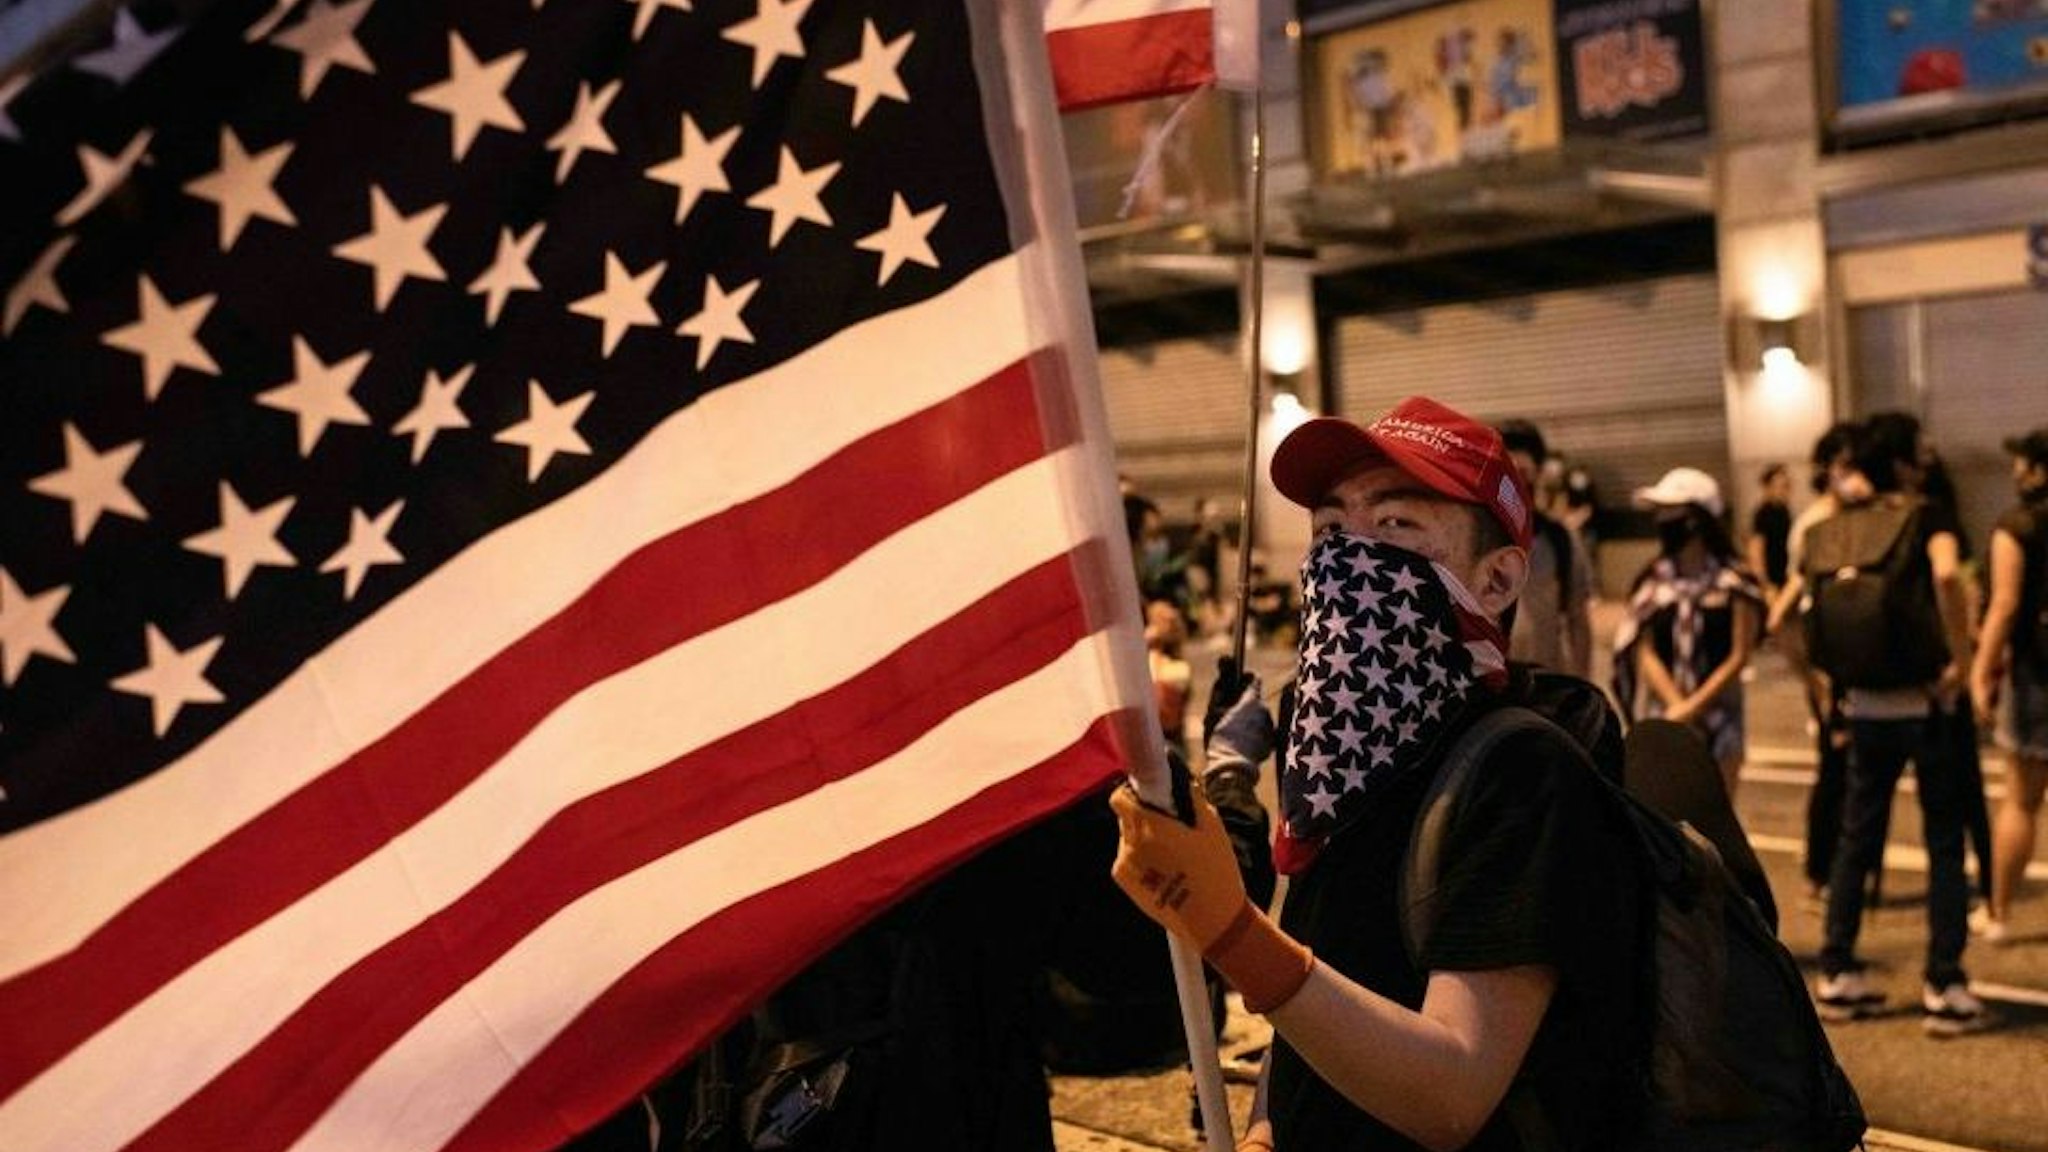 Demonstrator waves an American flag during the protest. KOWLOON, HONG KONG, HONG KONG SAR, CHINA